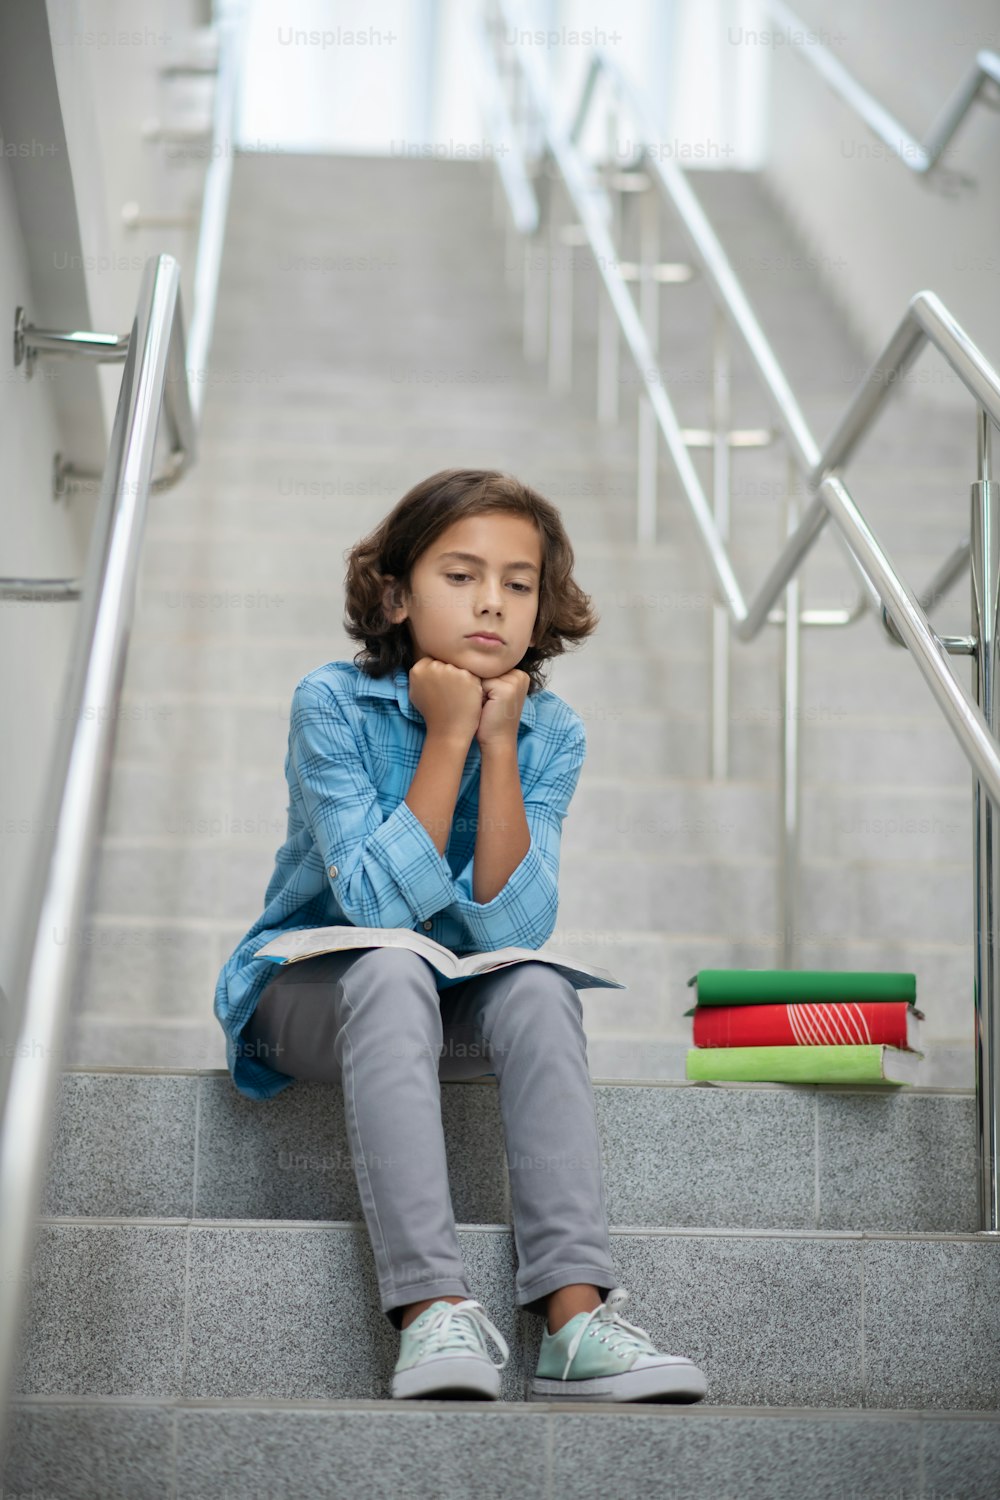 悲しみ、気分。水色のrtsbashkaと灰色のズボンを着た悲しい少年が街の階段の階段に座り、本を手を置いている